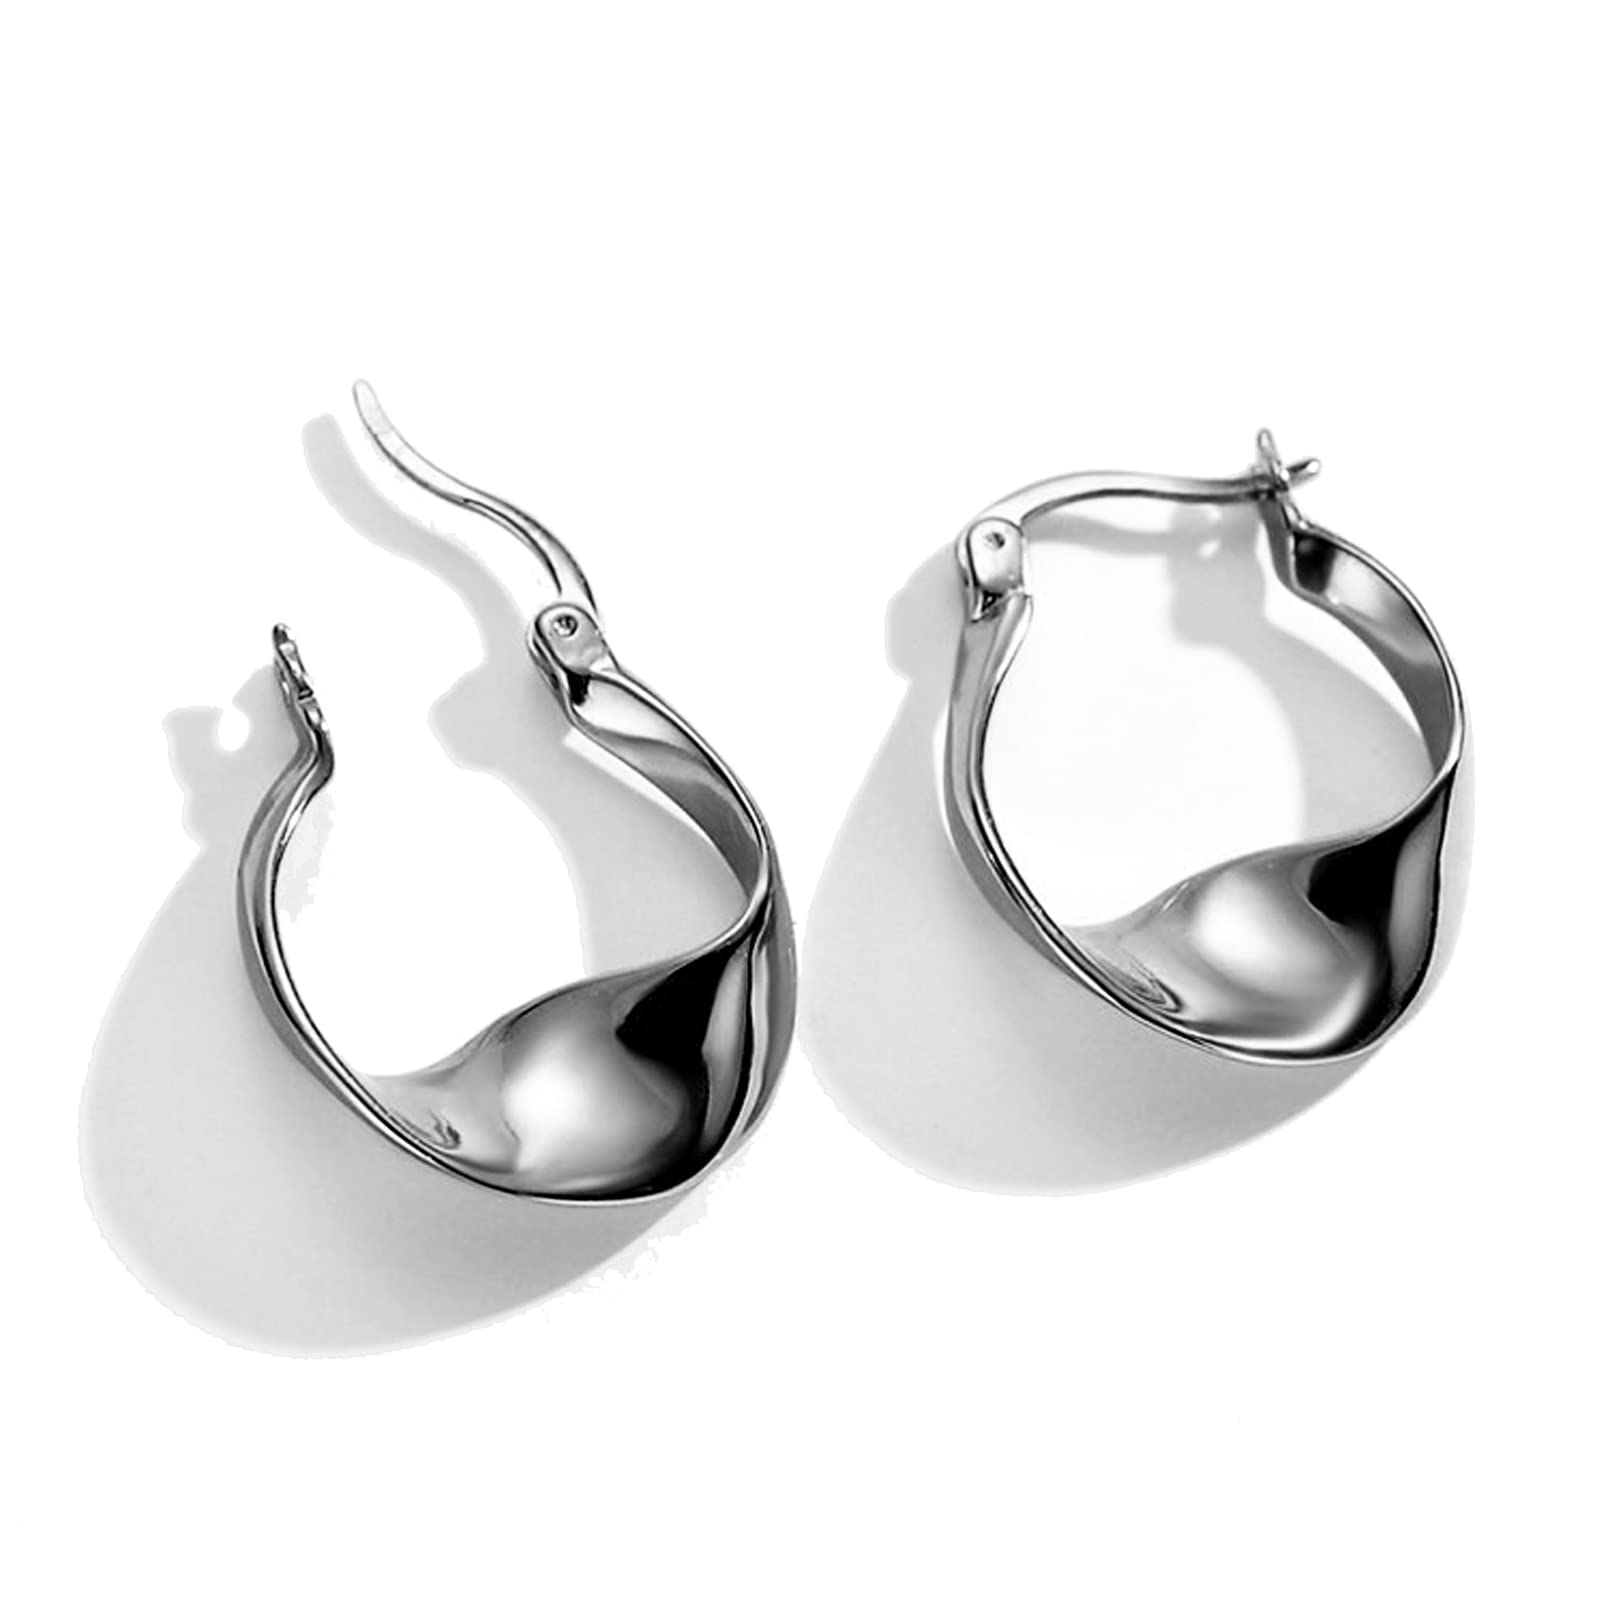 KesaPlan Sterling Silver Hoop Earrings For Women,14K White Gold Earrings Hypoallergenic Chunky Huggie Silver Hoops Small Fashion Dainty E